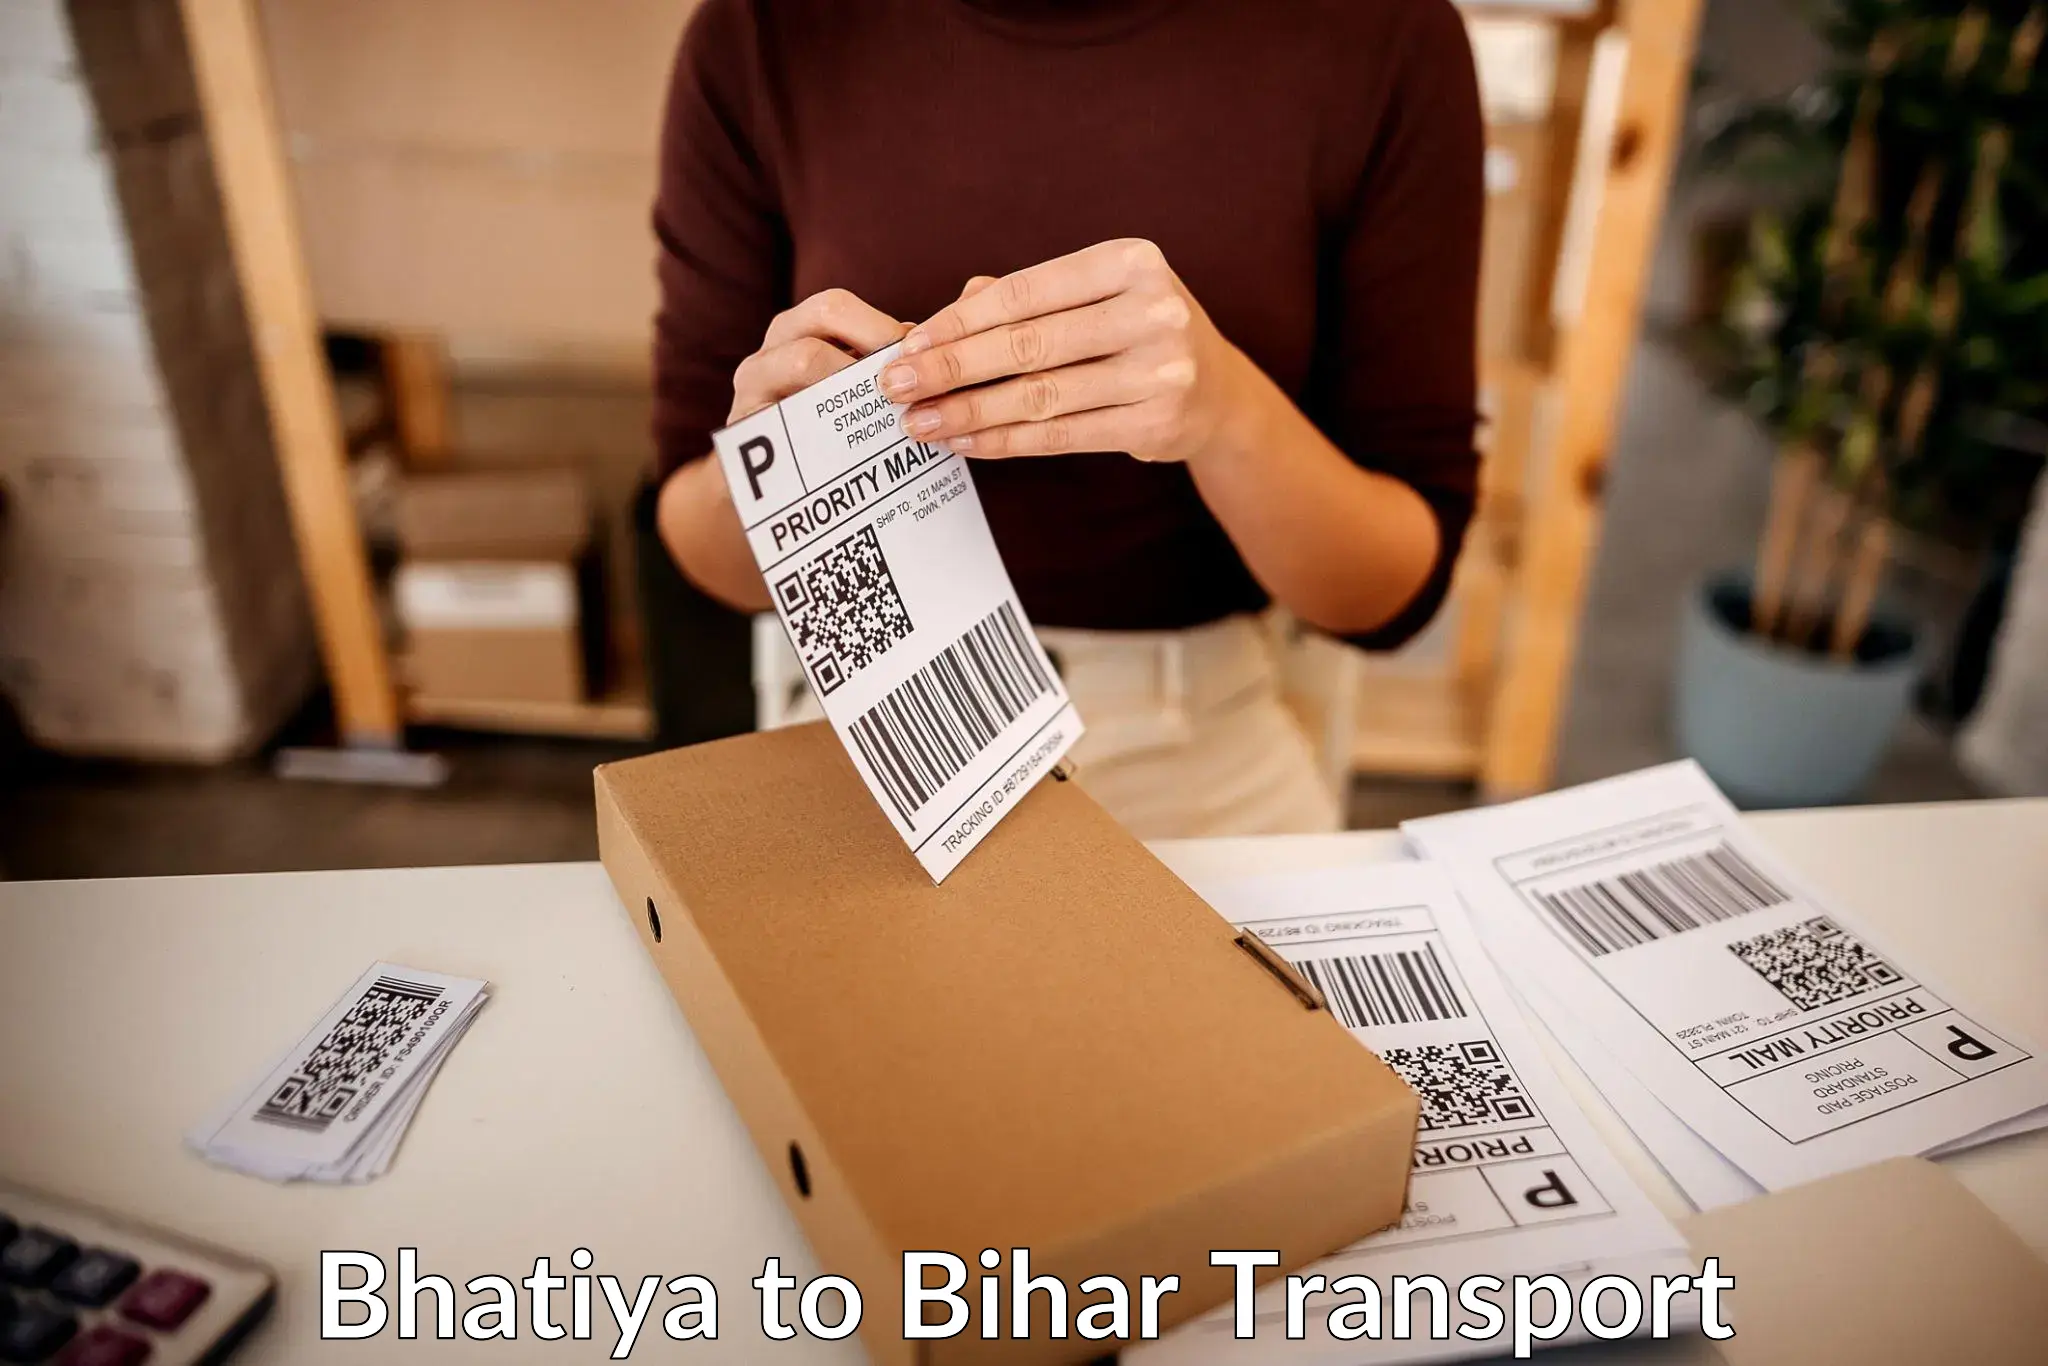 Cargo transportation services Bhatiya to Barhiya